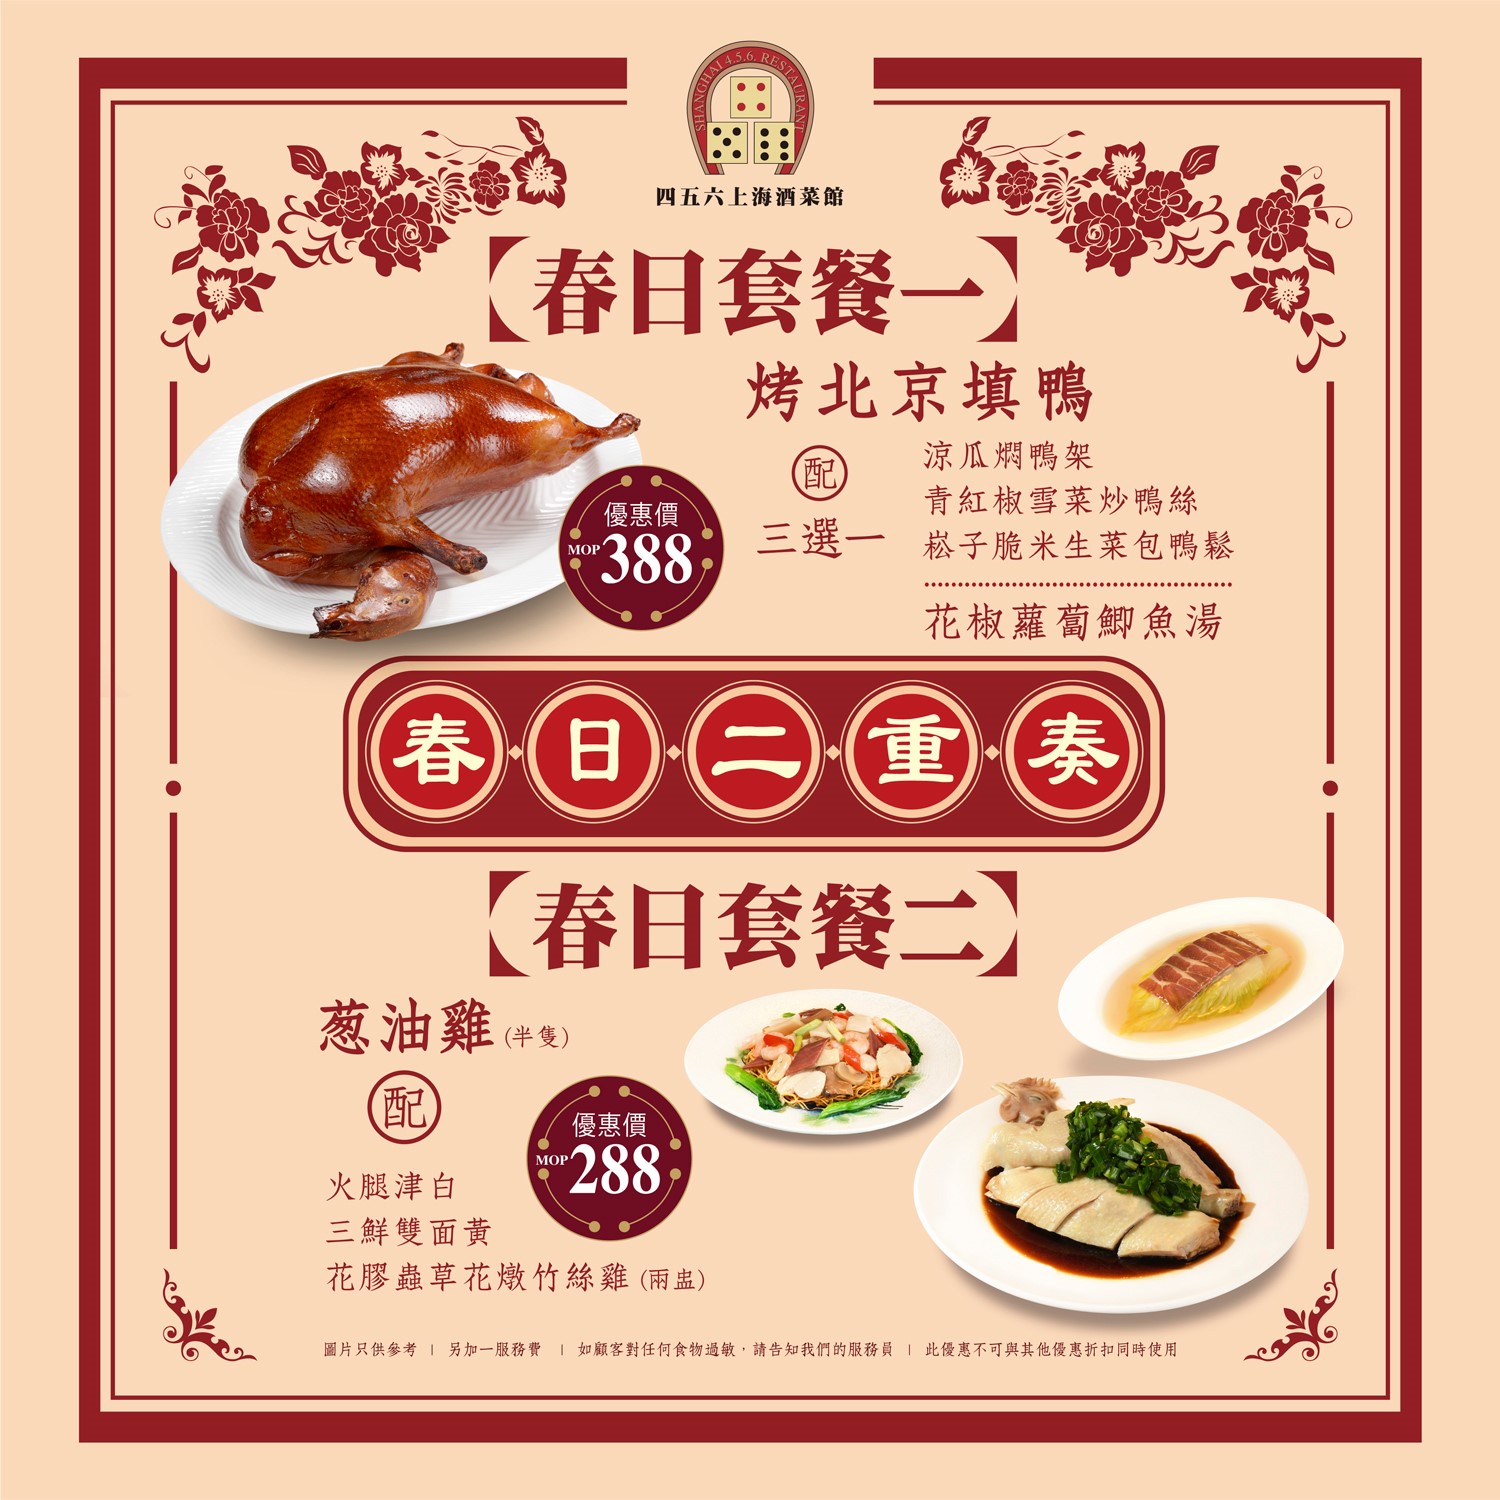 Shanghai 456 Restaurant